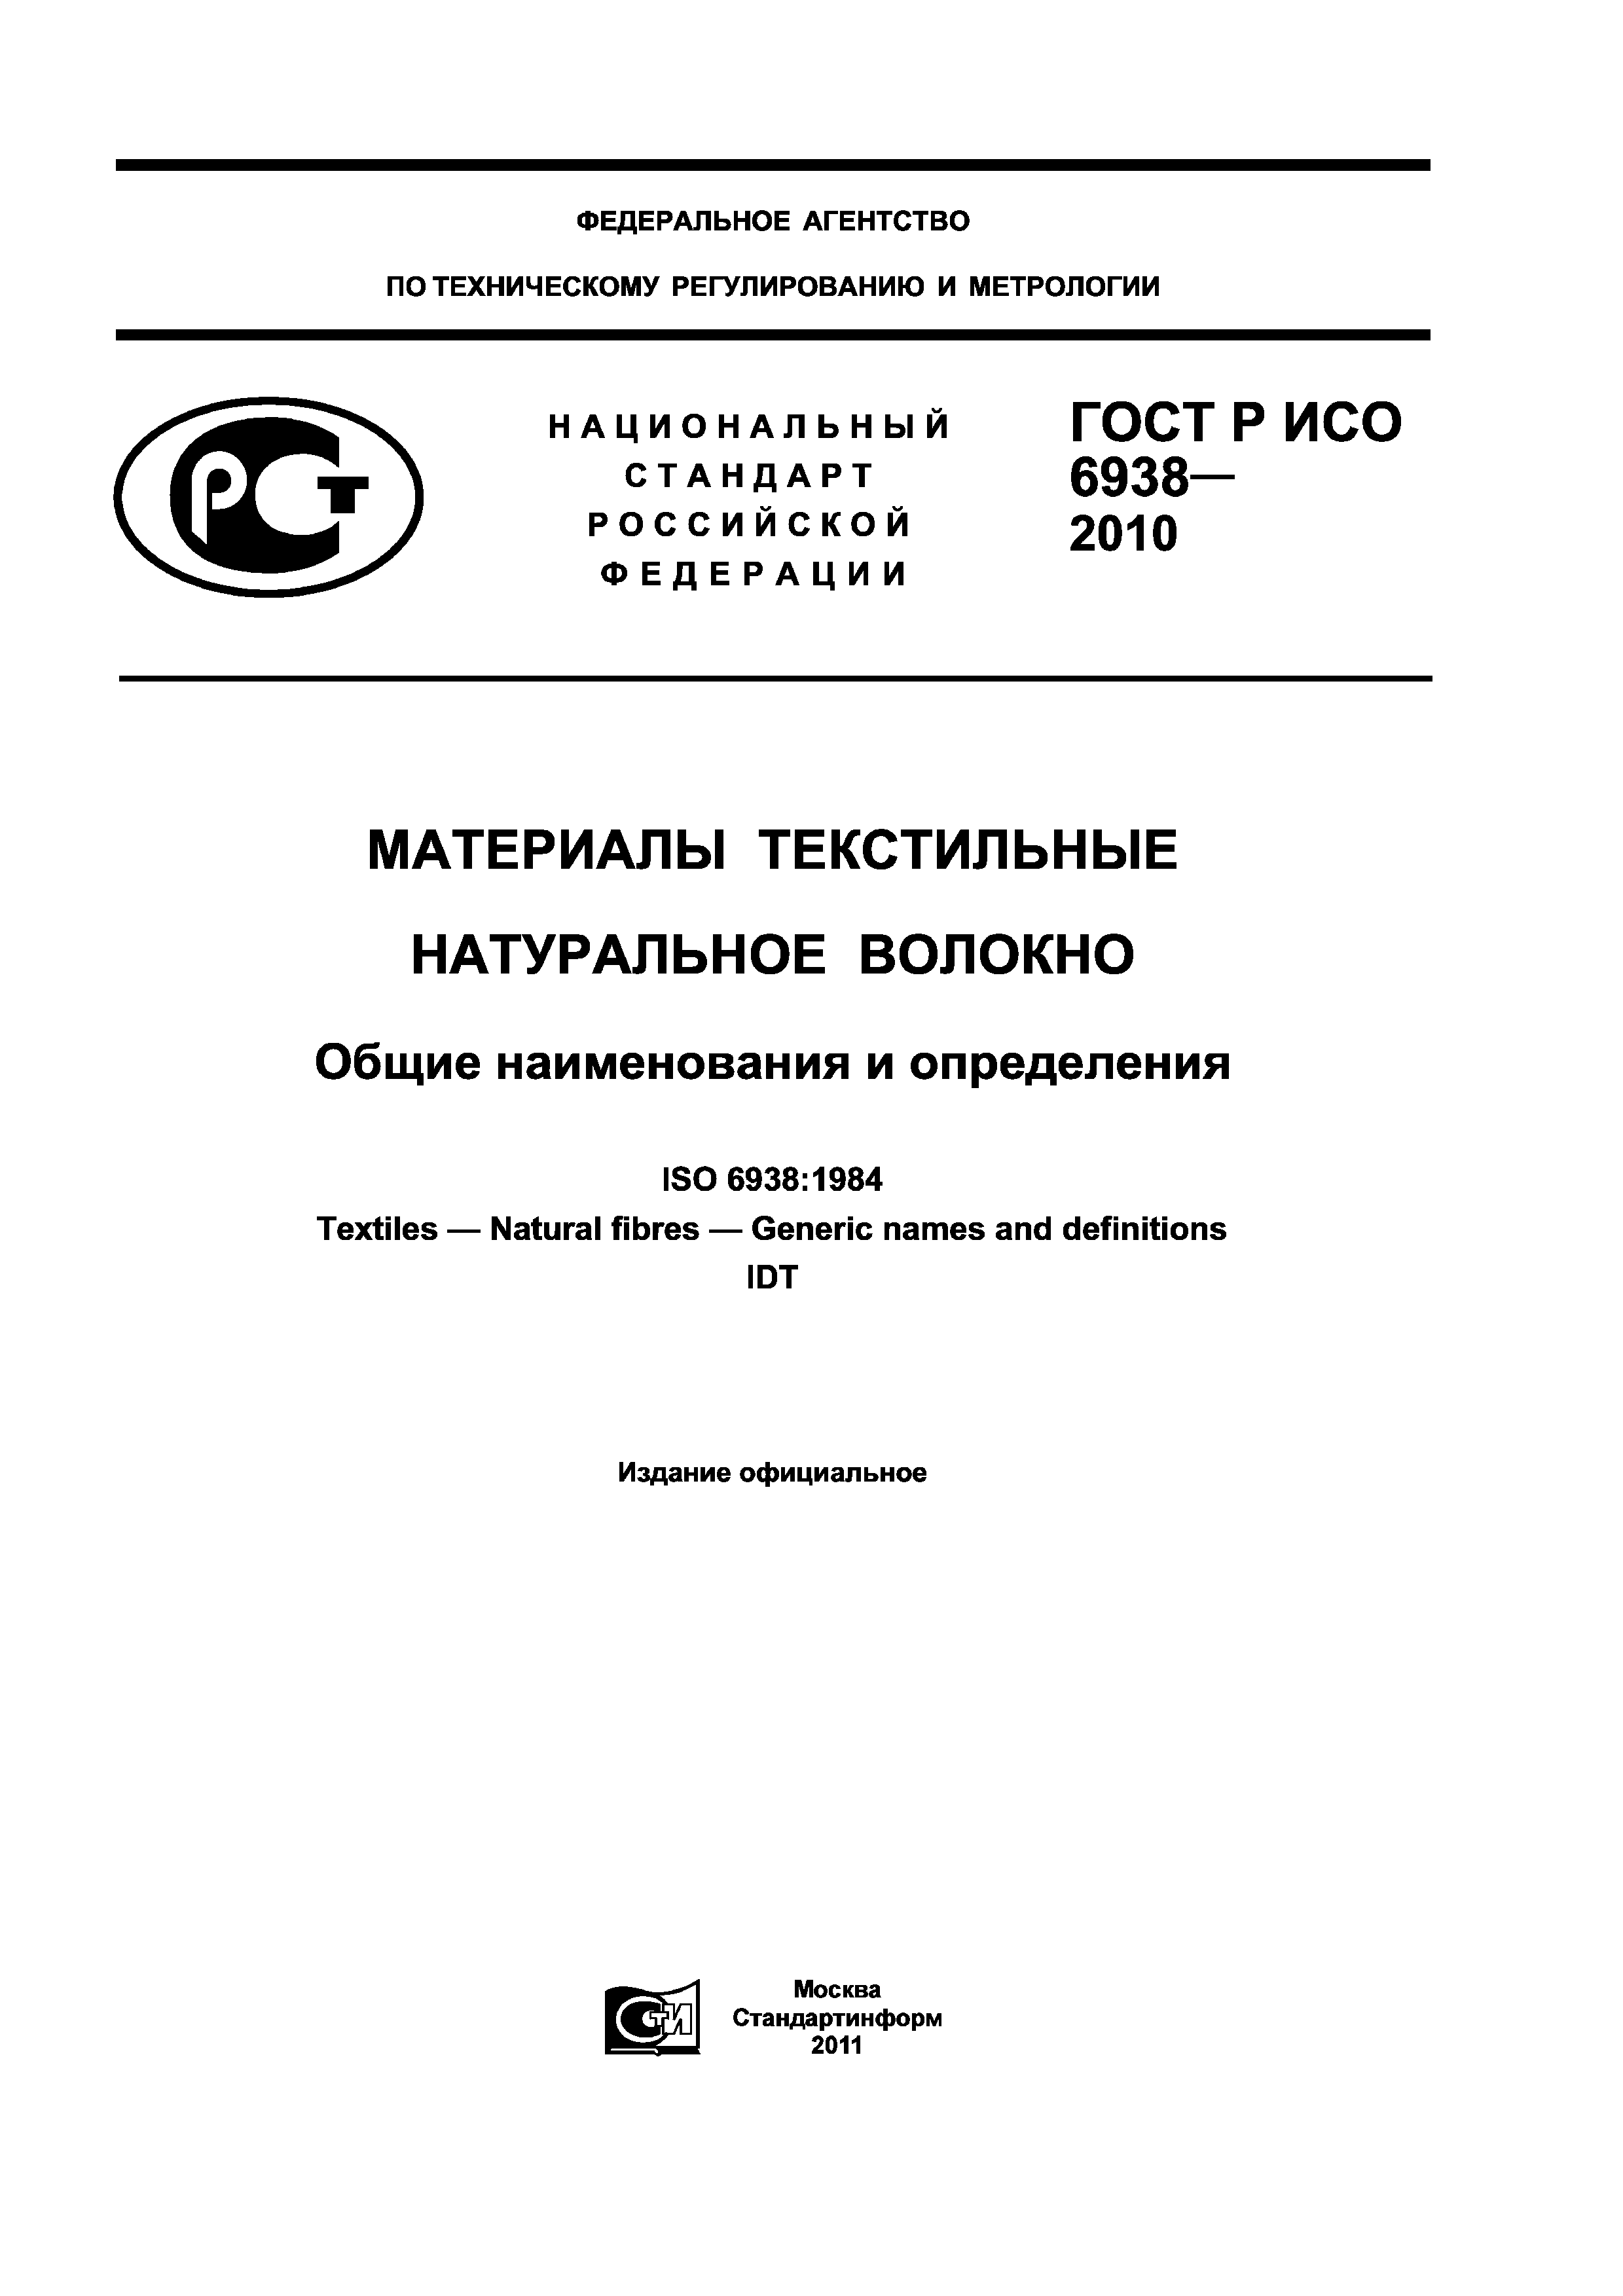 ГОСТ Р ИСО 6938-2010